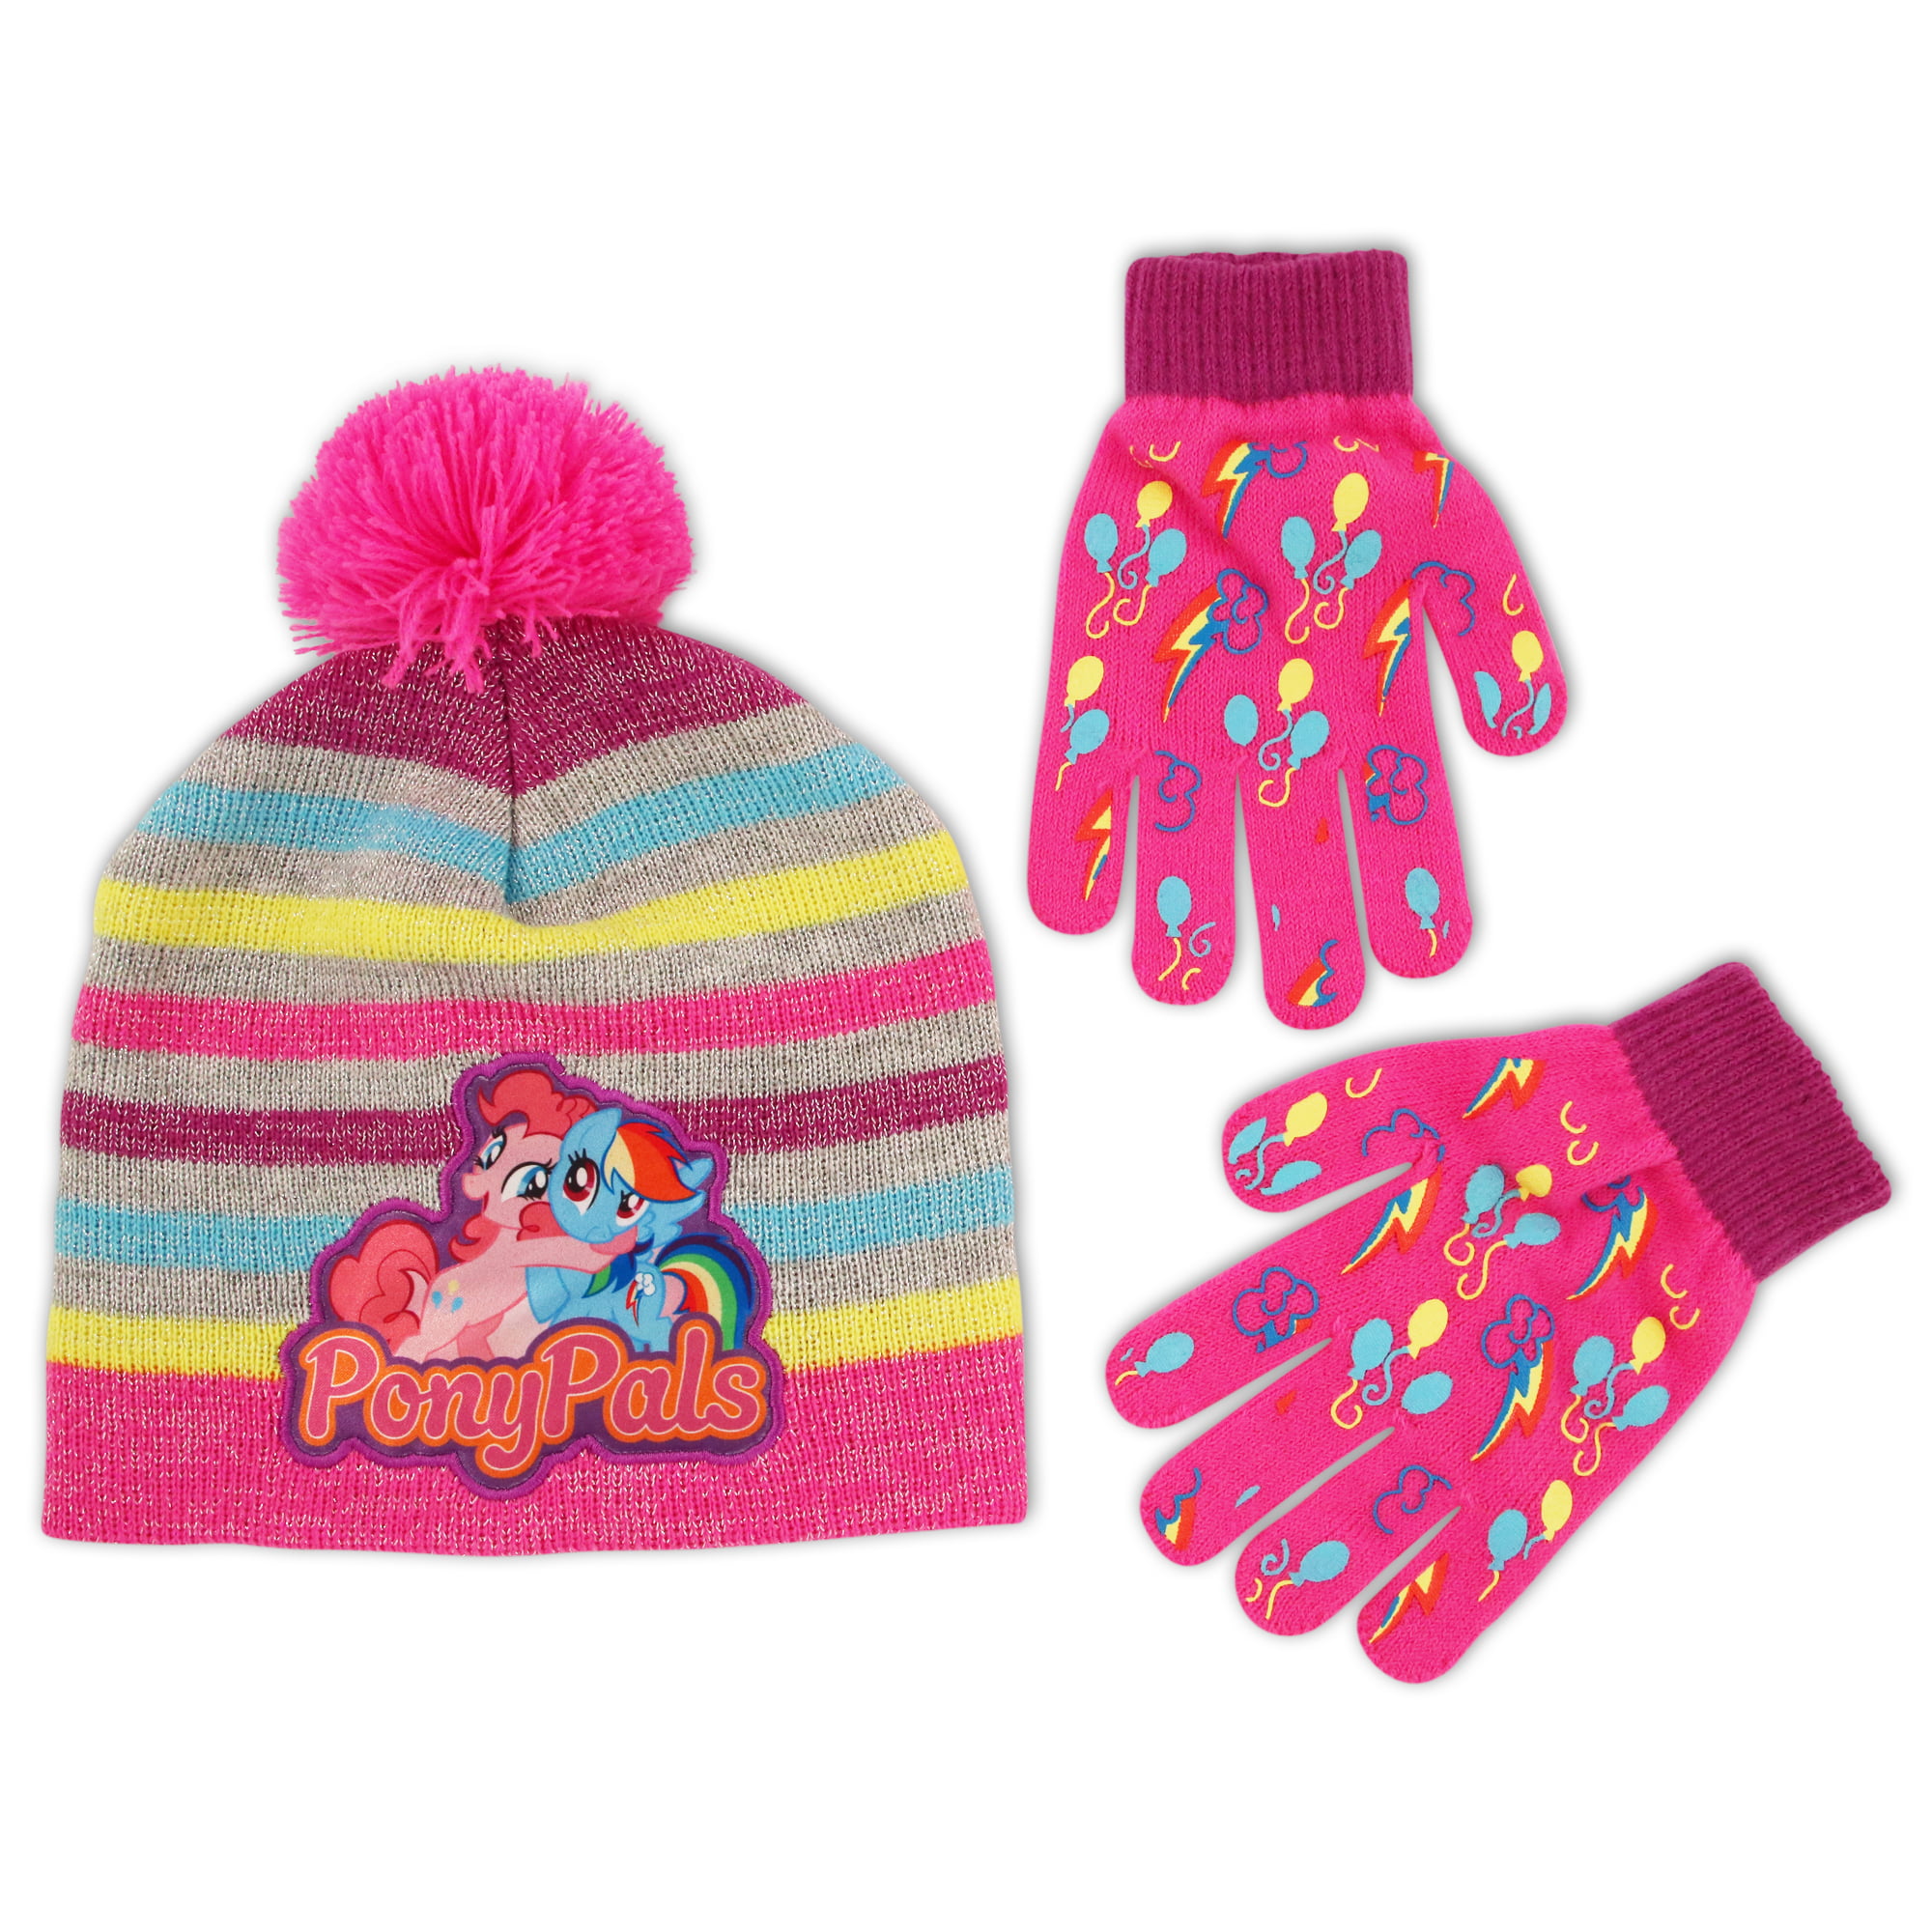 MY LITTLE PONY Peruvian Knit Winter Hat & Gloves Set w/ Pom-Pom & Braids NWT $22 